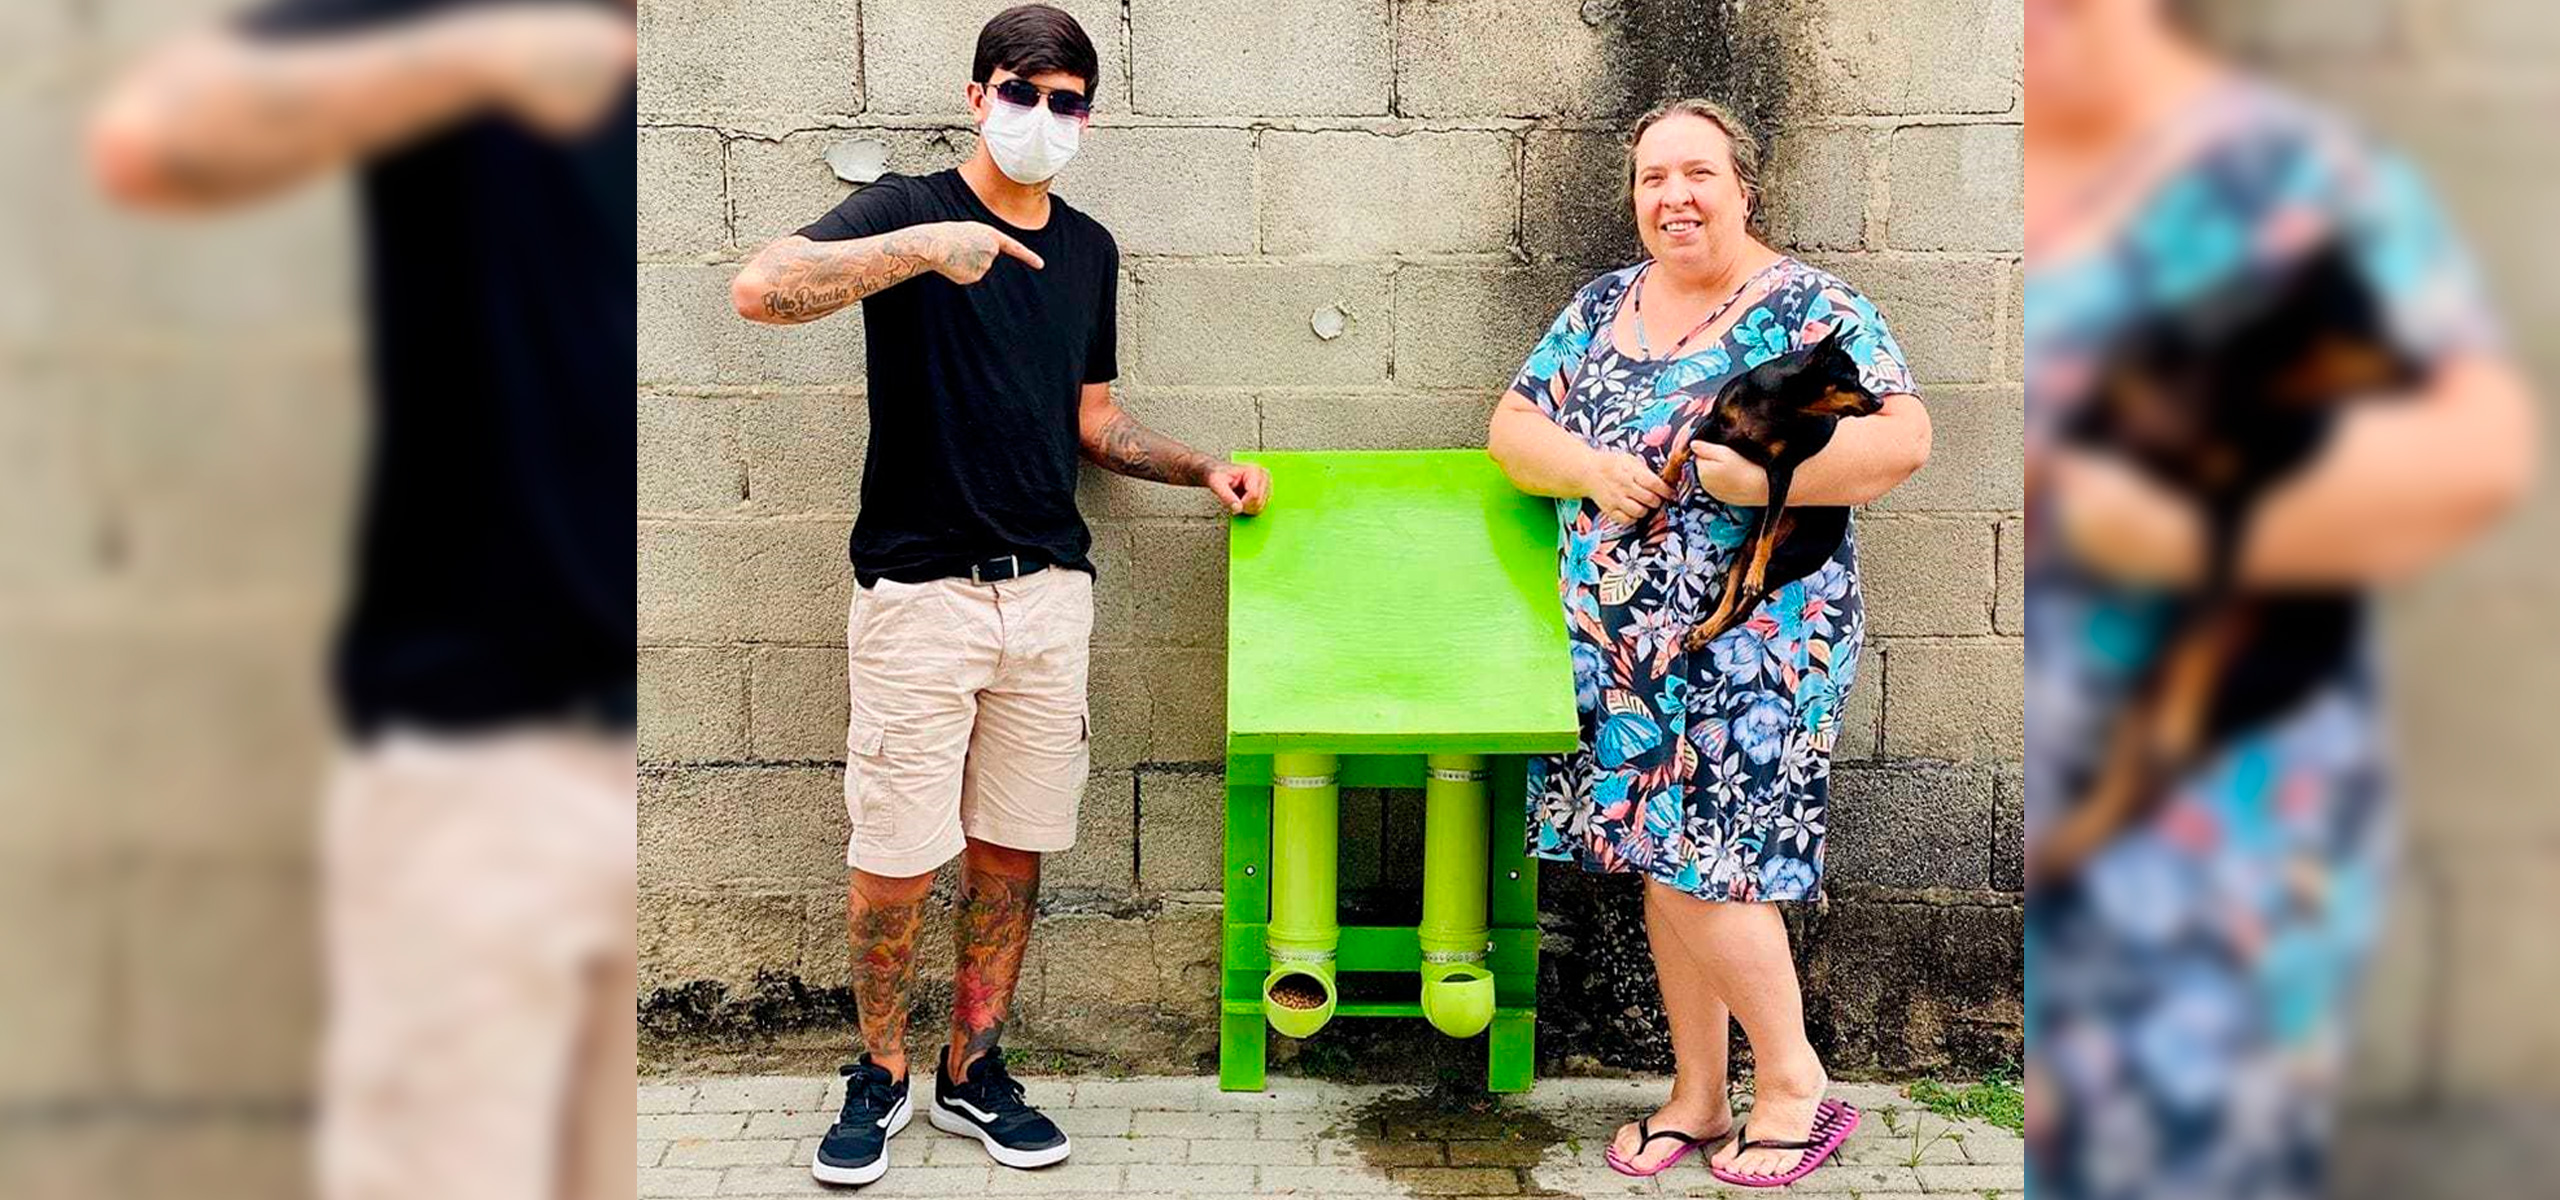 Jovem instalou comedouros para animais de rua sobreviverem durante a quarentena